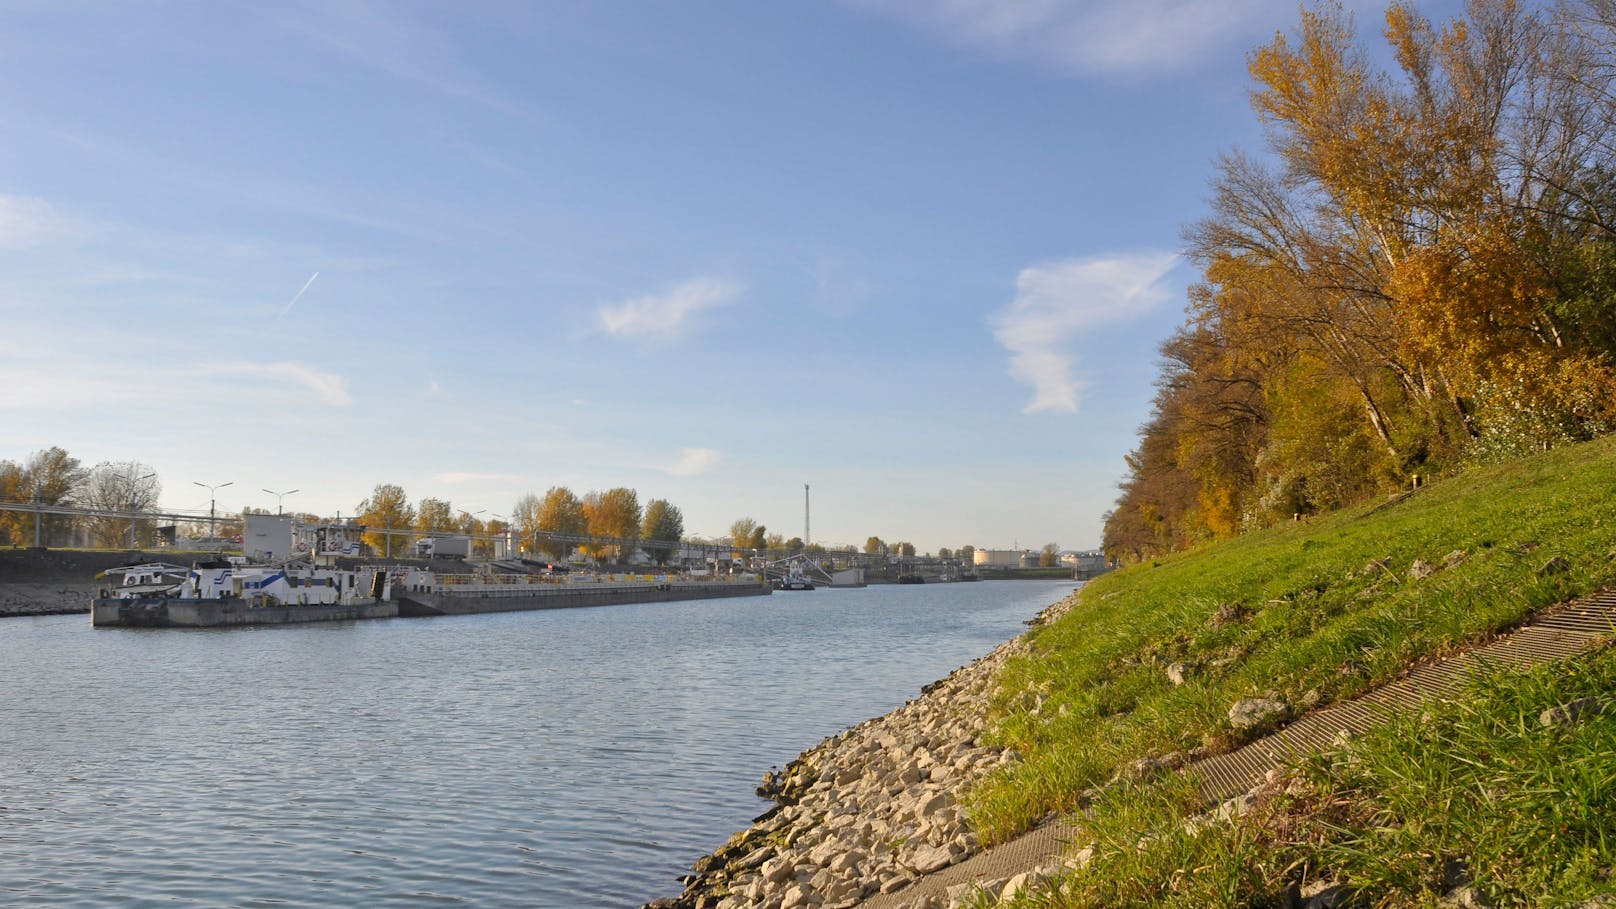 Mann über Bord – jetzt wurde Leiche in Donau gefunden